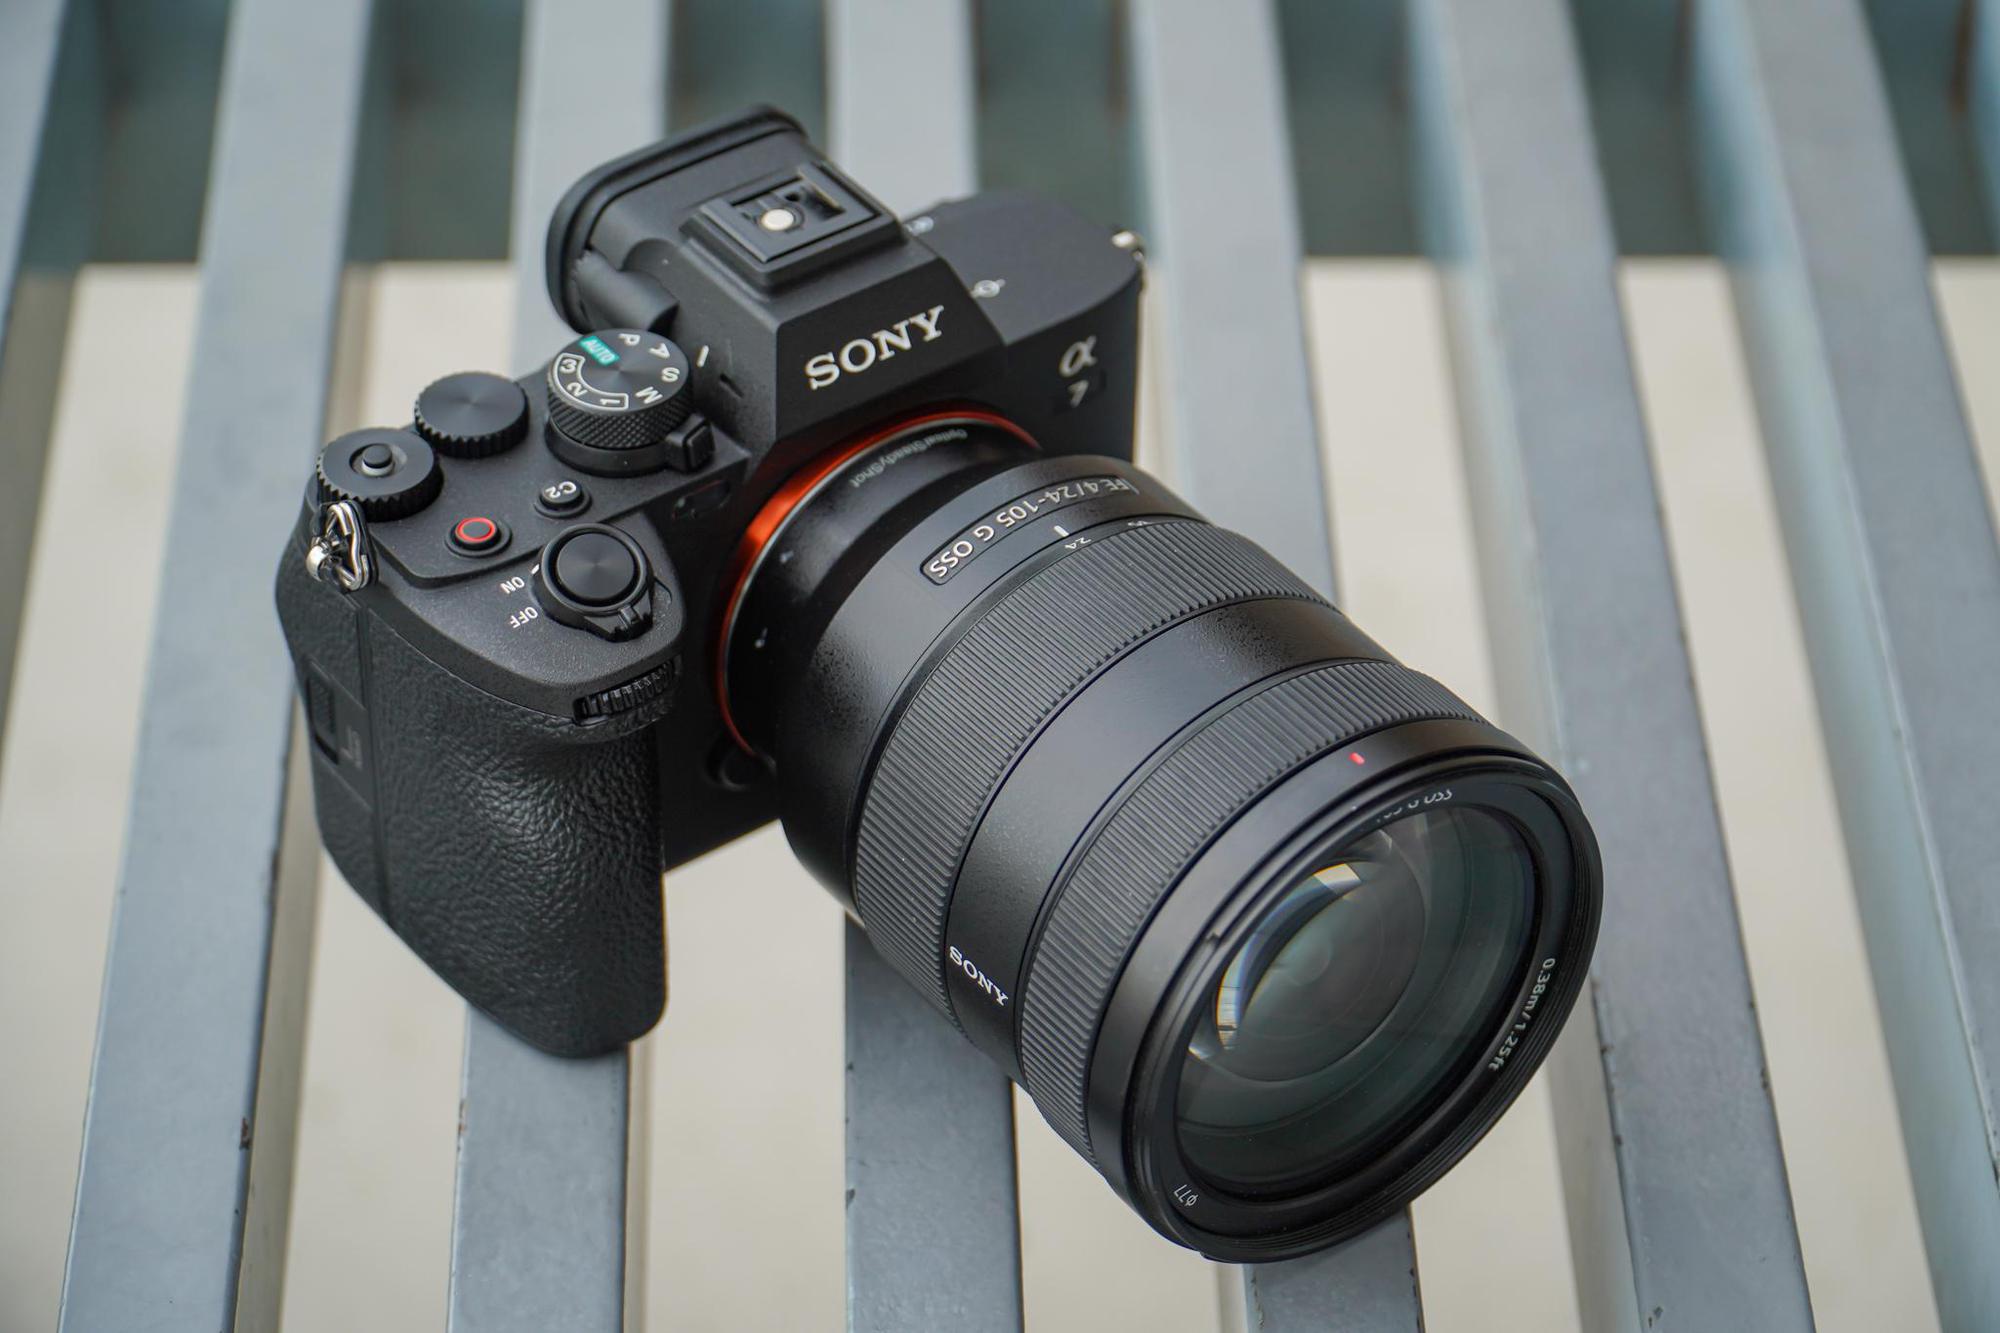 Trải nghiệm bộ đôi “siêu kit” dòng G của Sony: định chuẩn ống kính quay video đa dụng - Ảnh 1.